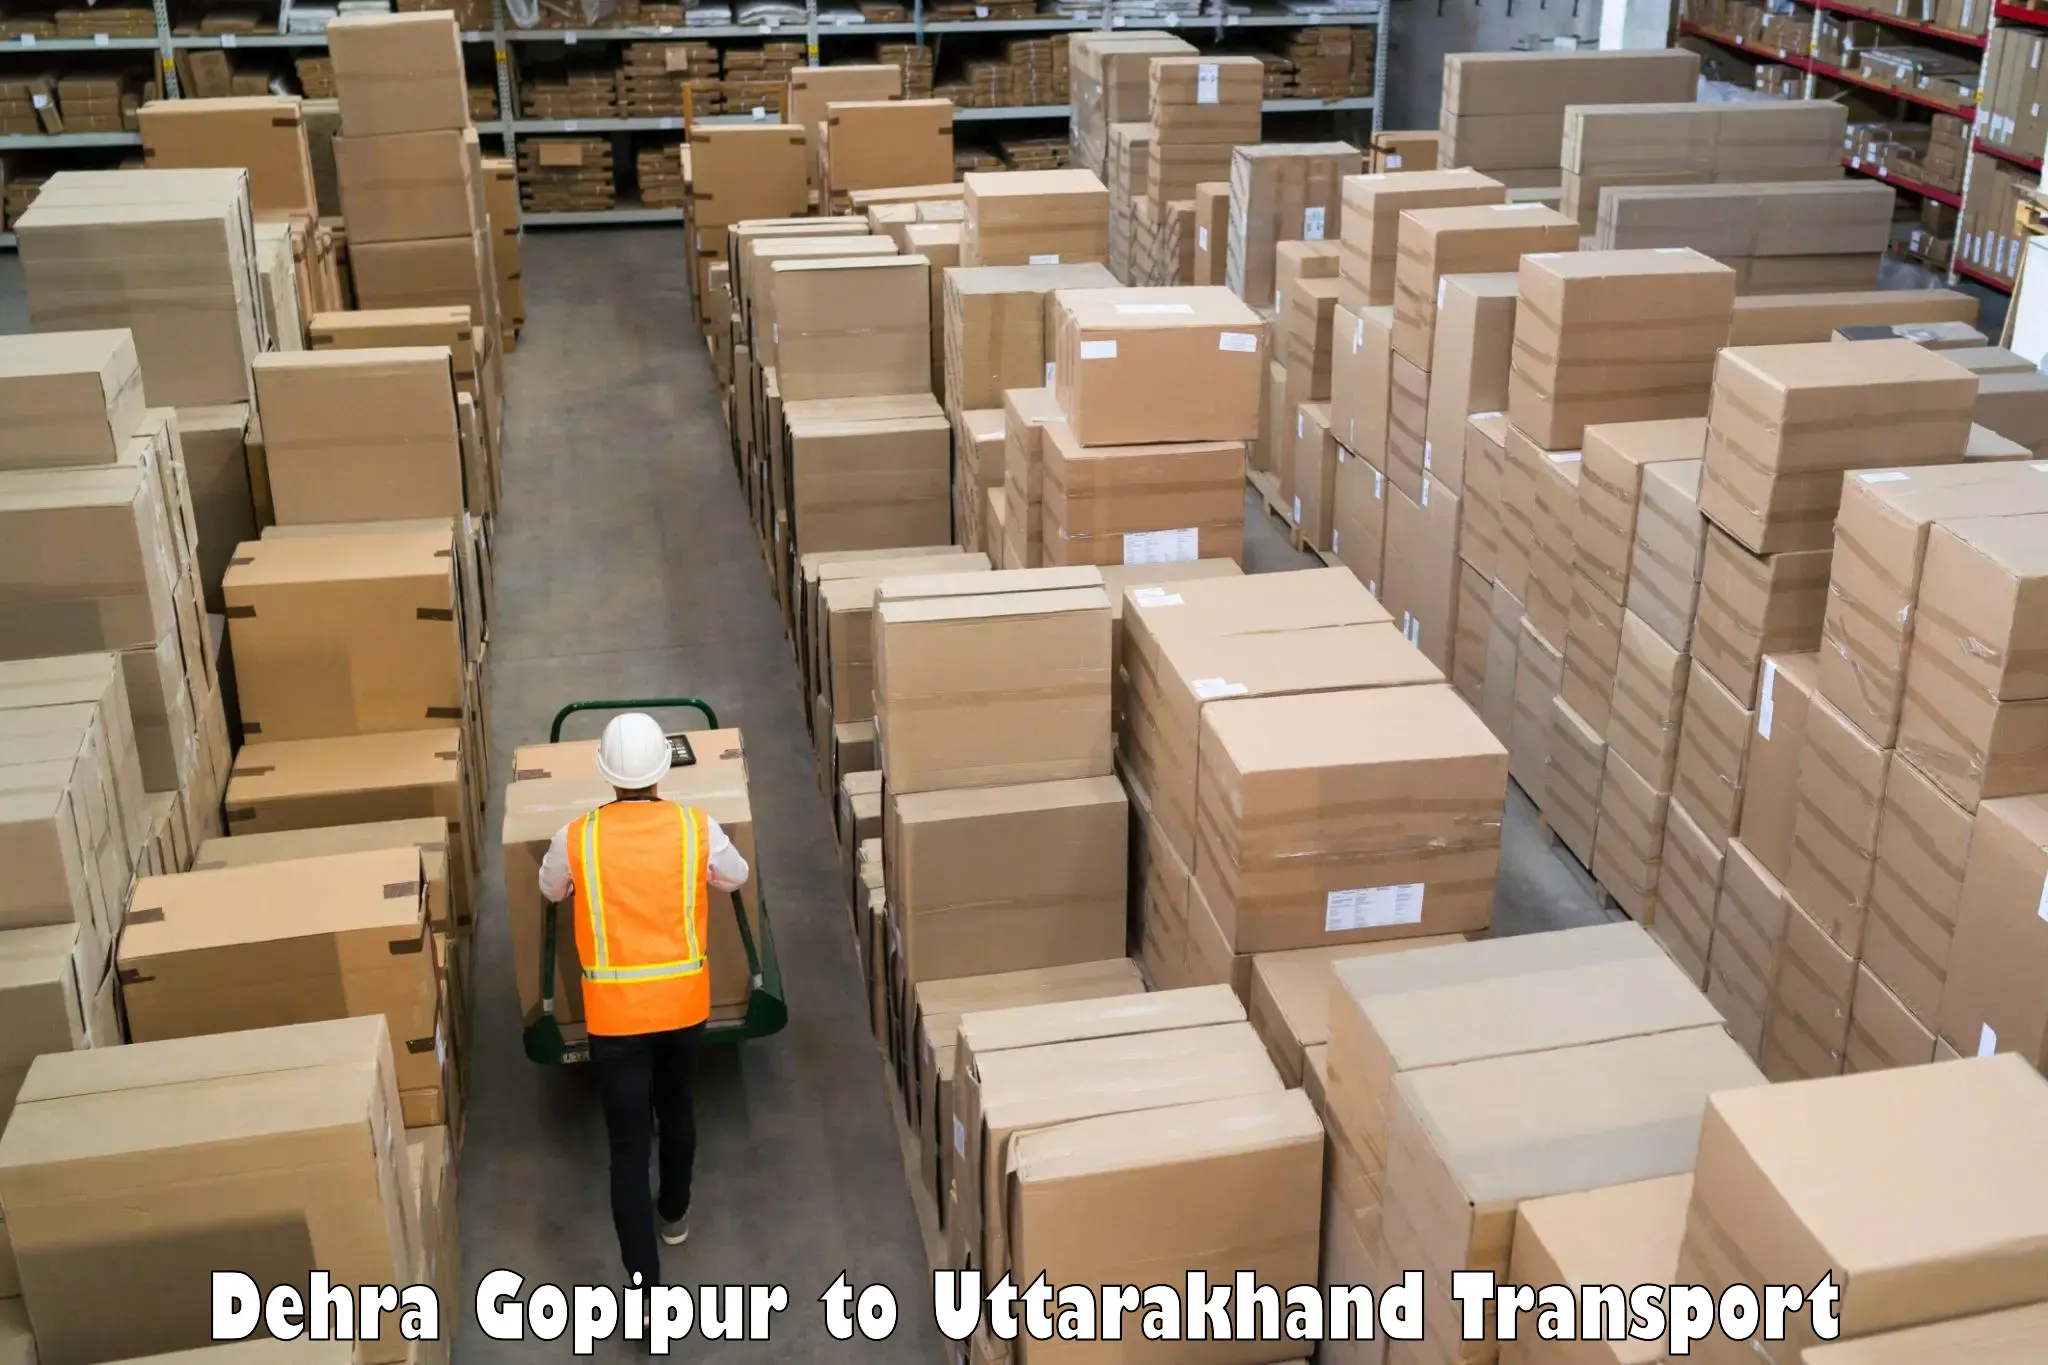 Two wheeler parcel service Dehra Gopipur to Uttarakhand